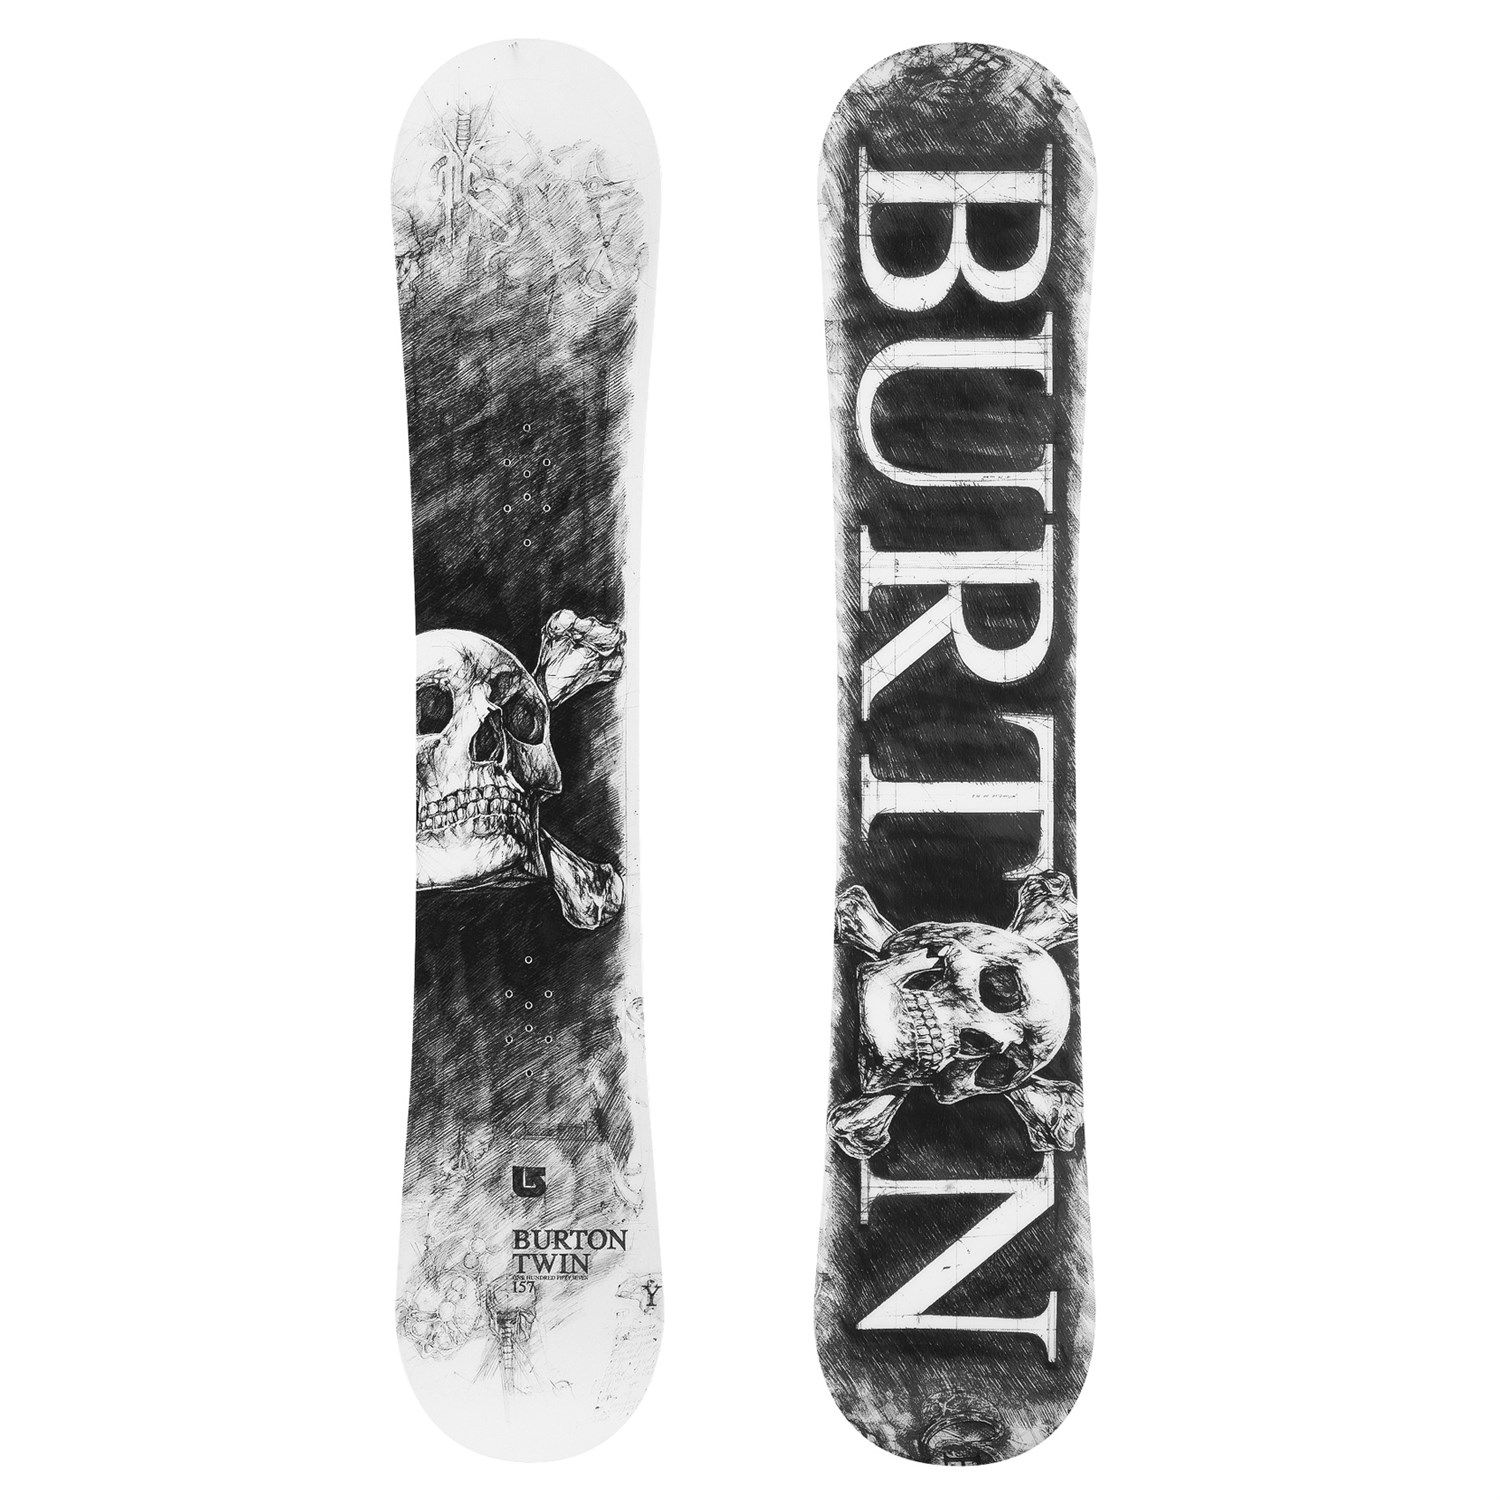 BURTON TWIN 157  スノーボード　SKULL-EDITION